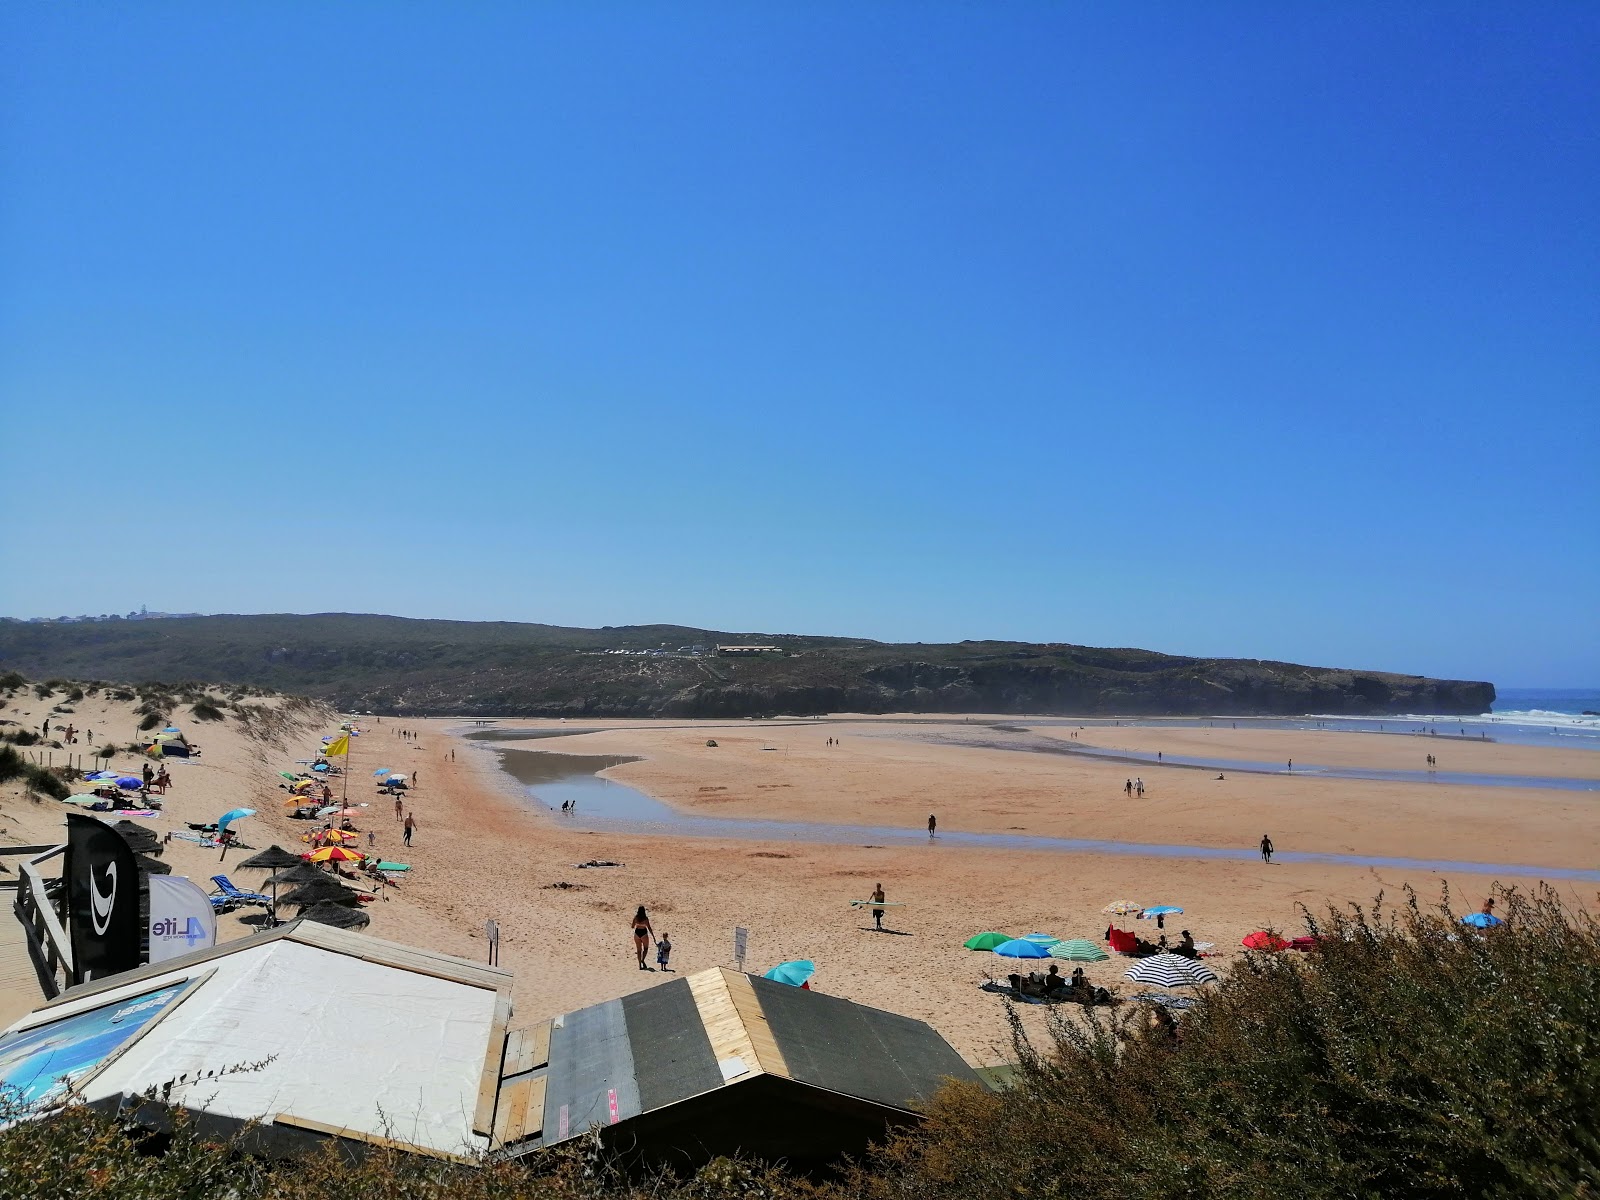 Praia da Amoreira'in fotoğrafı uçurumlarla desteklenmiş